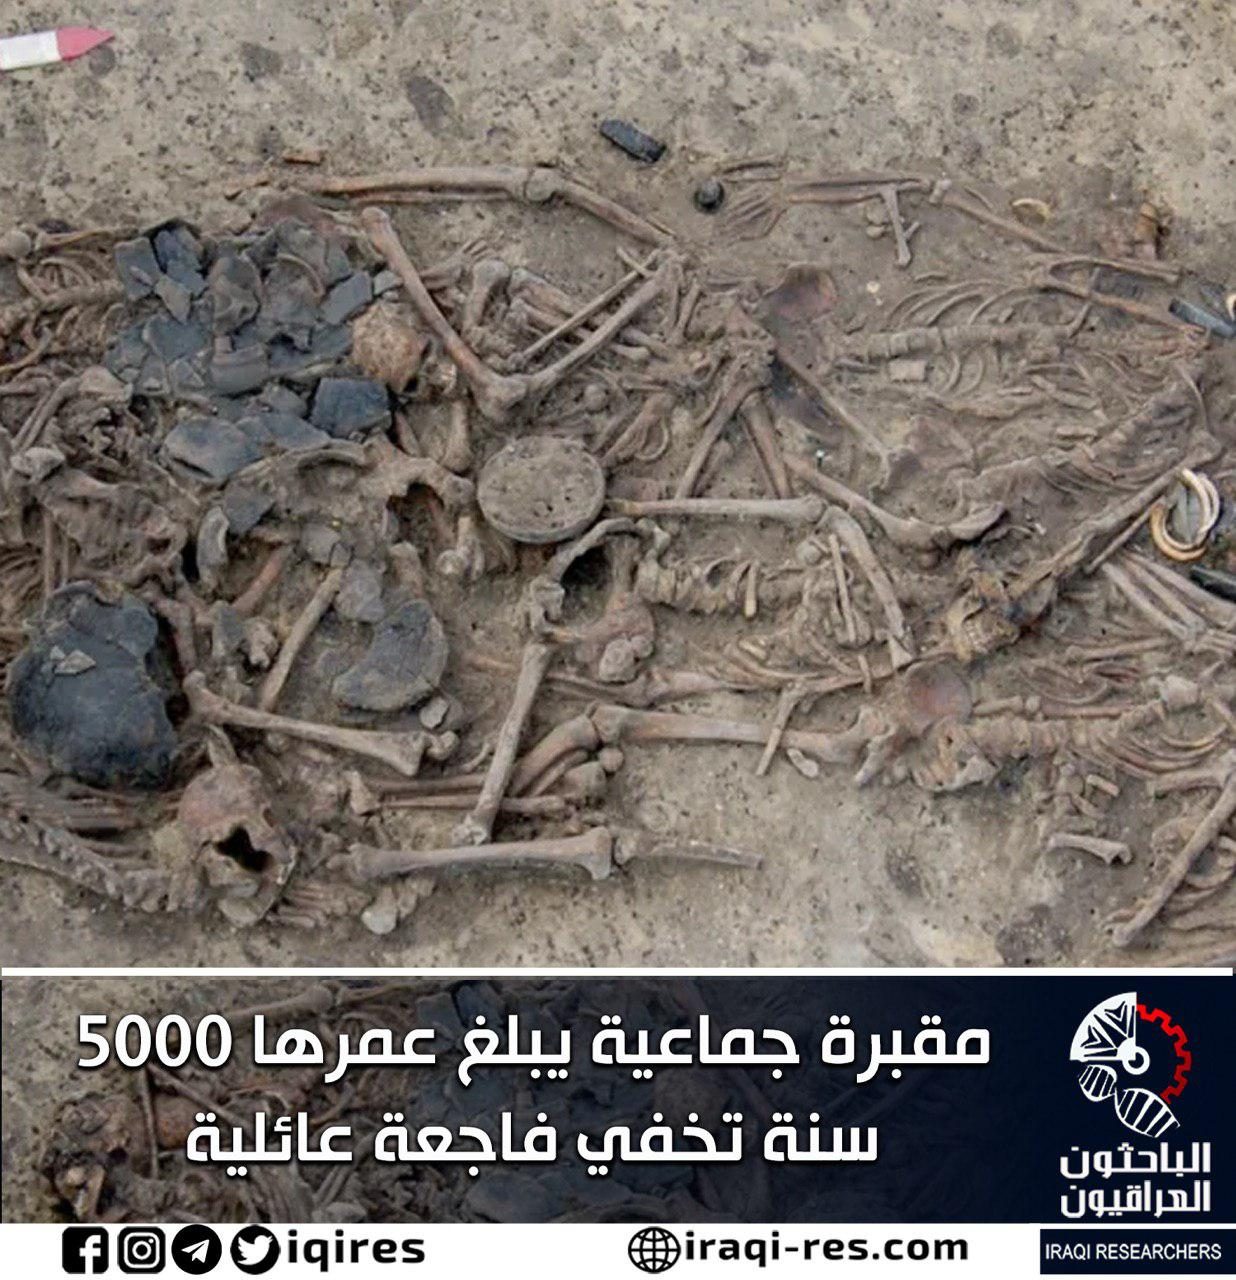 مقبرة جماعية يبلغ عمرها 5000 سنة تخفي فاجعة عائلية الباحثون العراقيون